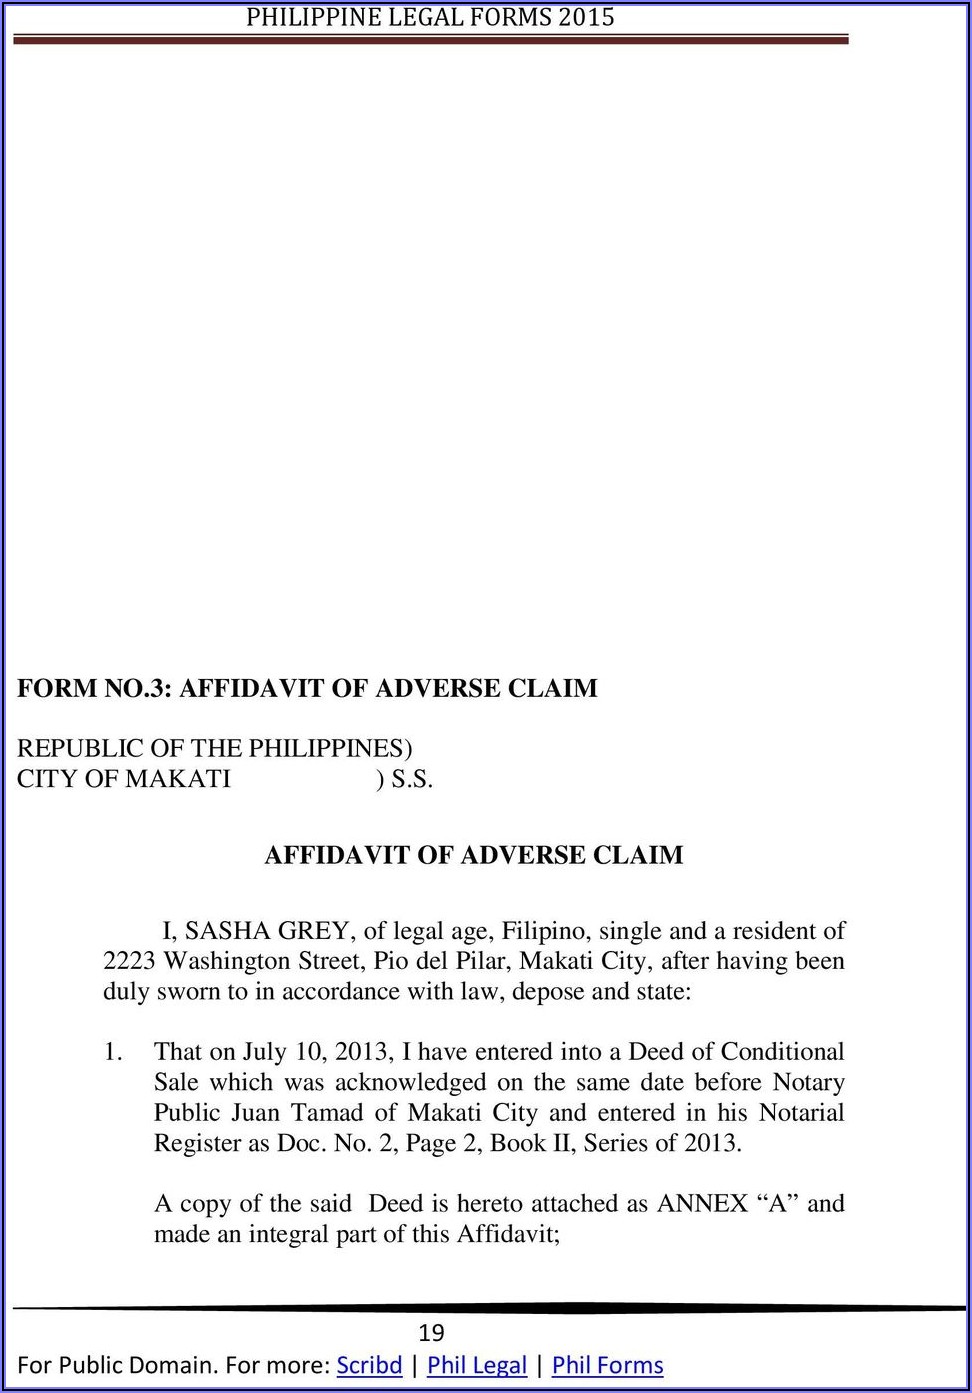 Sample Form Affidavit Of Adverse Claim